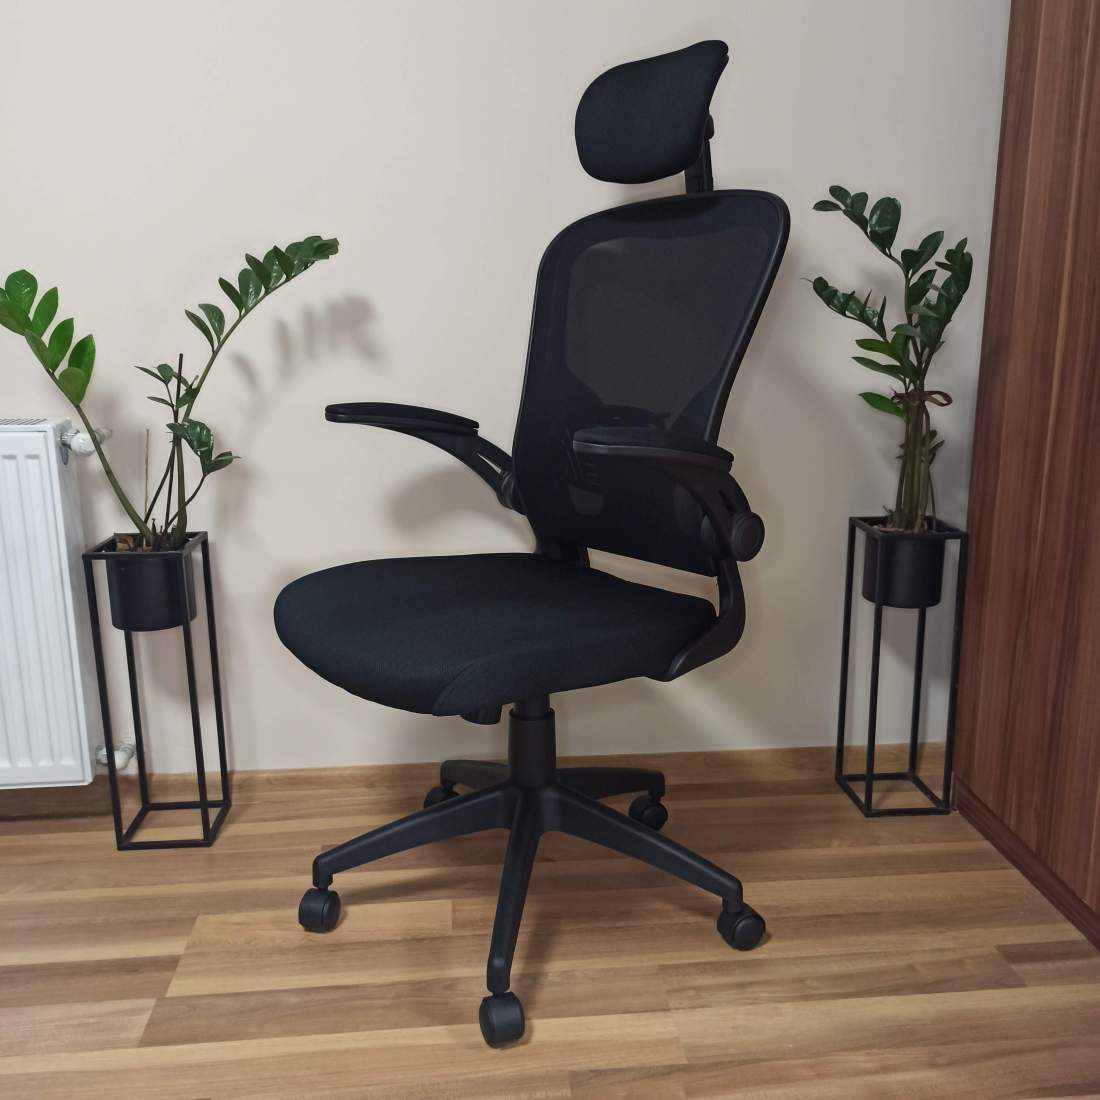 MESH-KFFK operatív ergotex irodai szék főnöki szék forgószék fotel